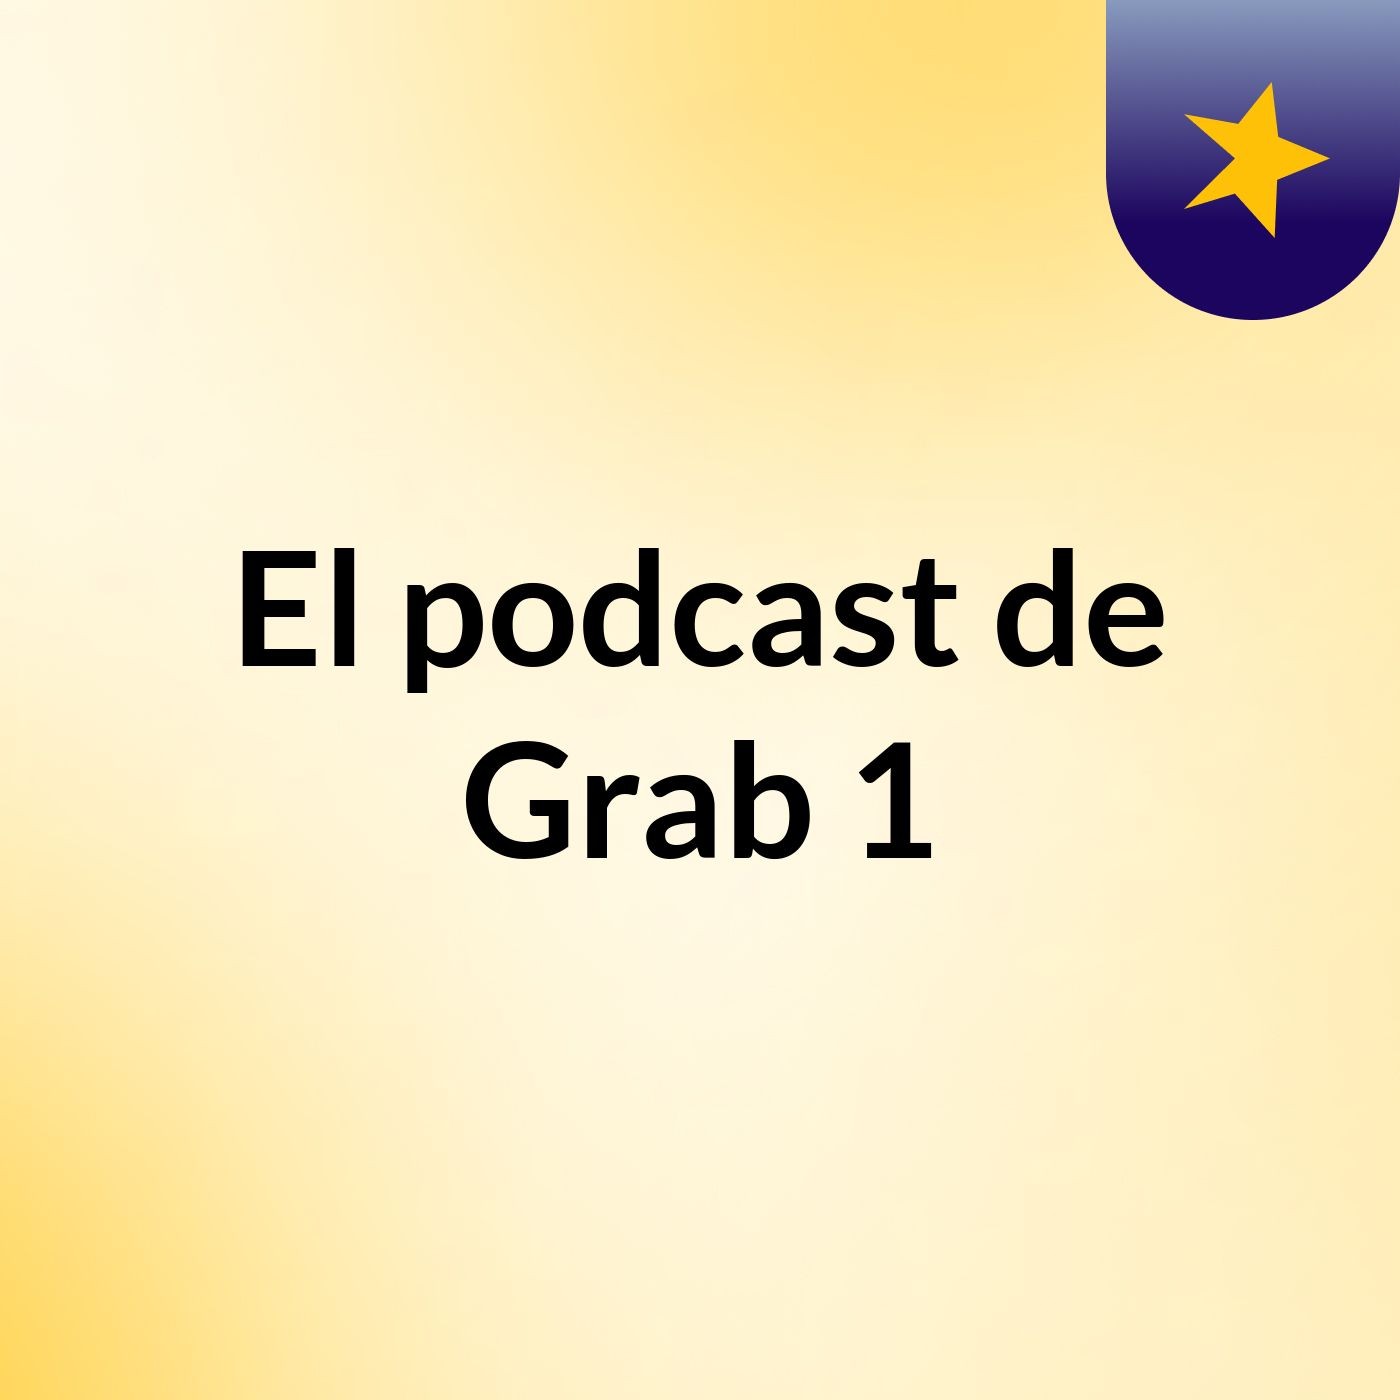 El podcast de Grab 1